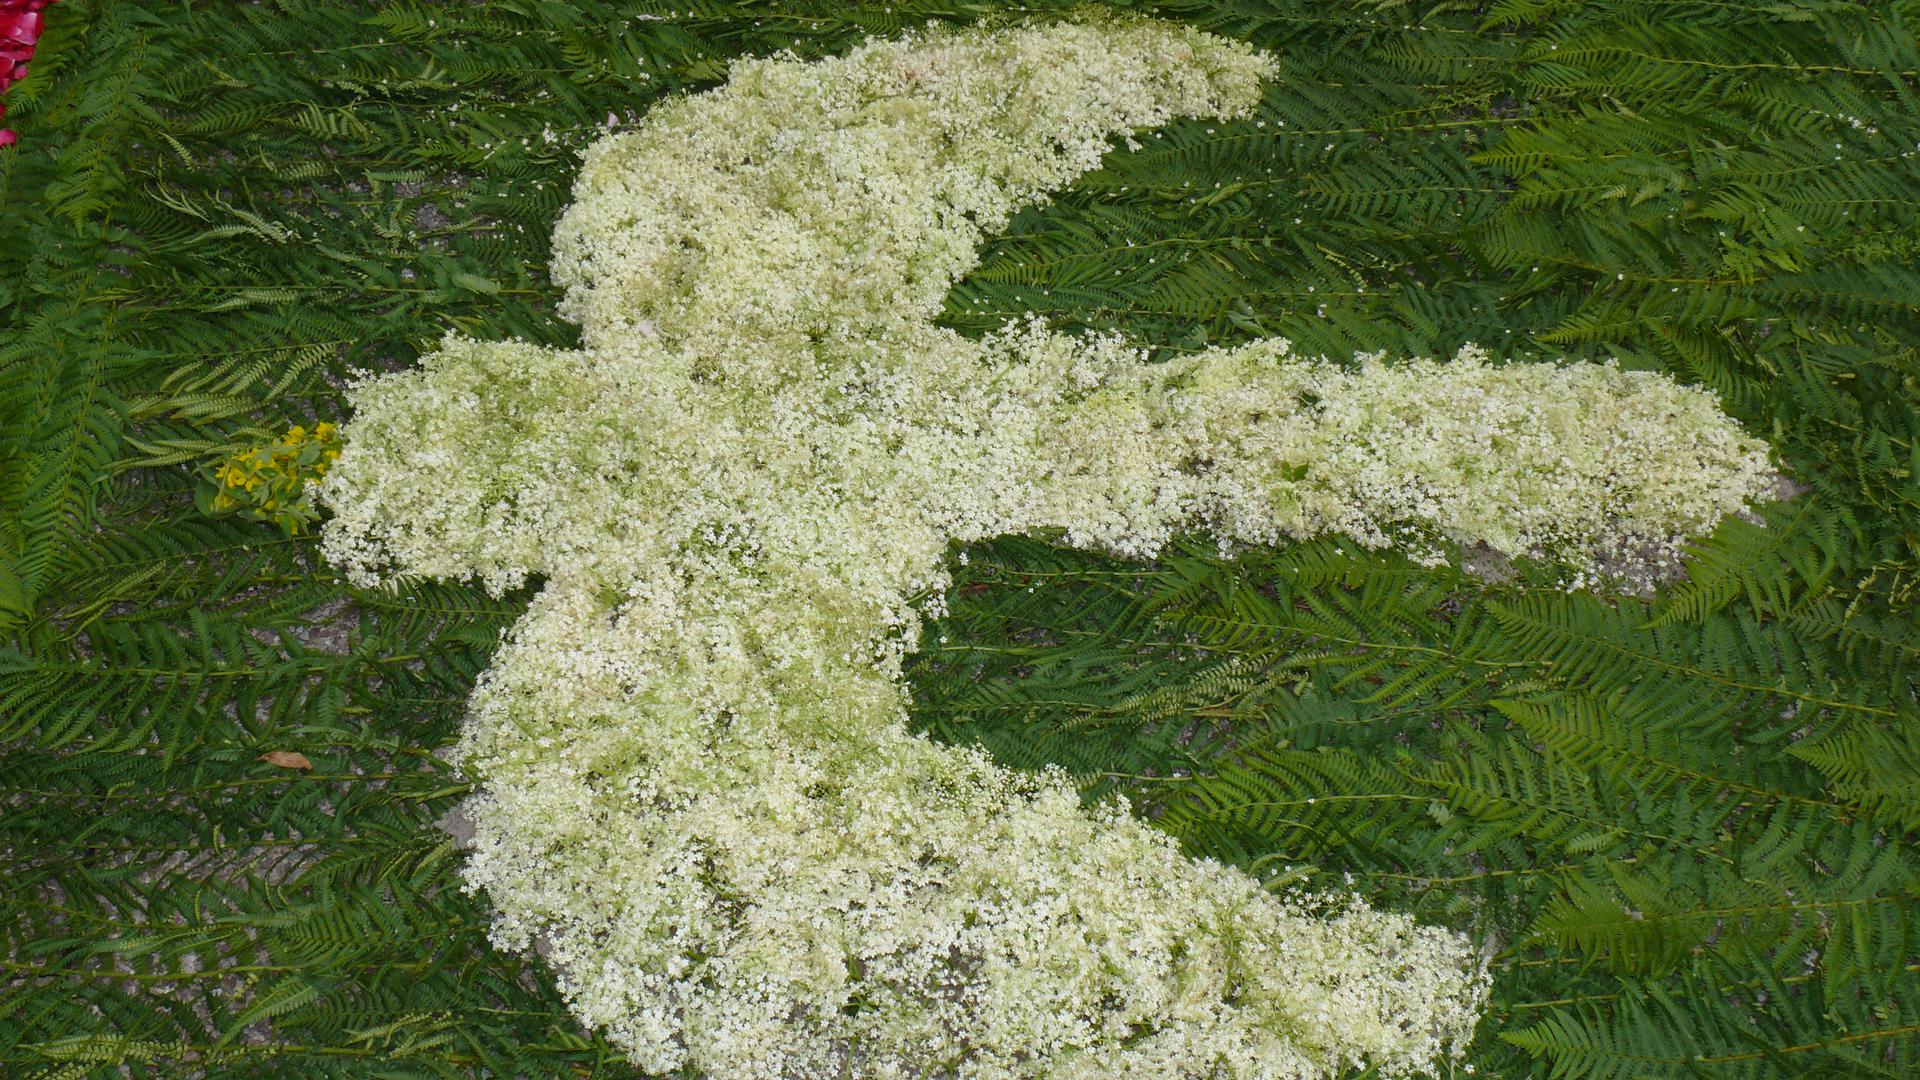 Heilig-Geist-Gemeinde Geroldsau feiert Fronleichnam mit Blumenteppich